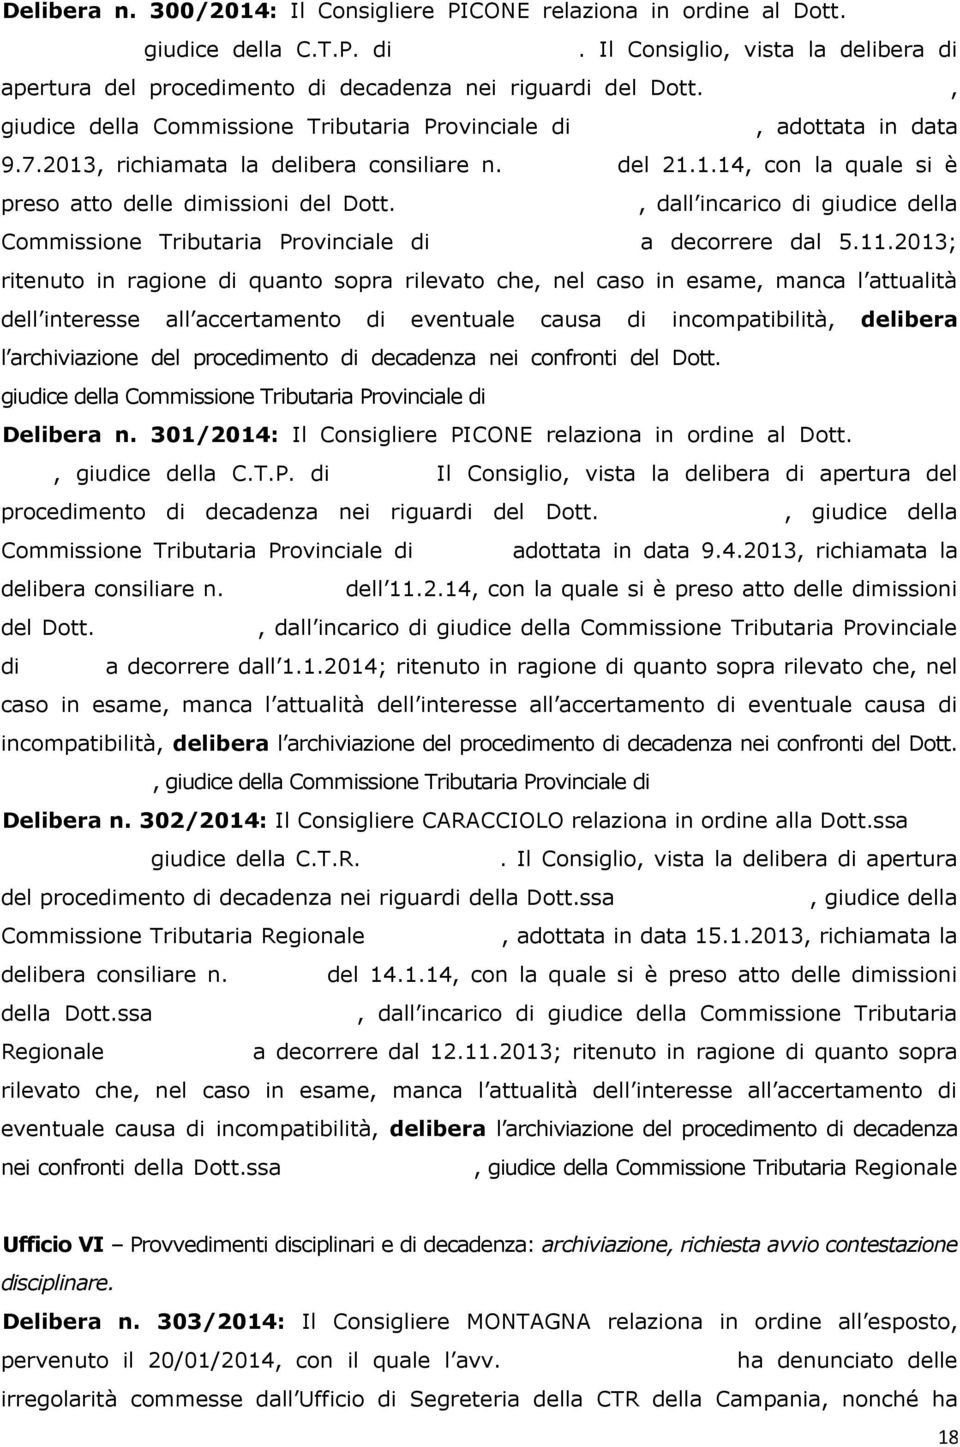 Giuseppe ADORNATO, giudice della Commissione Tributaria Provinciale di Reggio Calabria, adottata in data 9.7.2013, richiamata la delibera consiliare n. 92/2014 del 21.1.14, con la quale si è preso atto delle dimissioni del Dott.